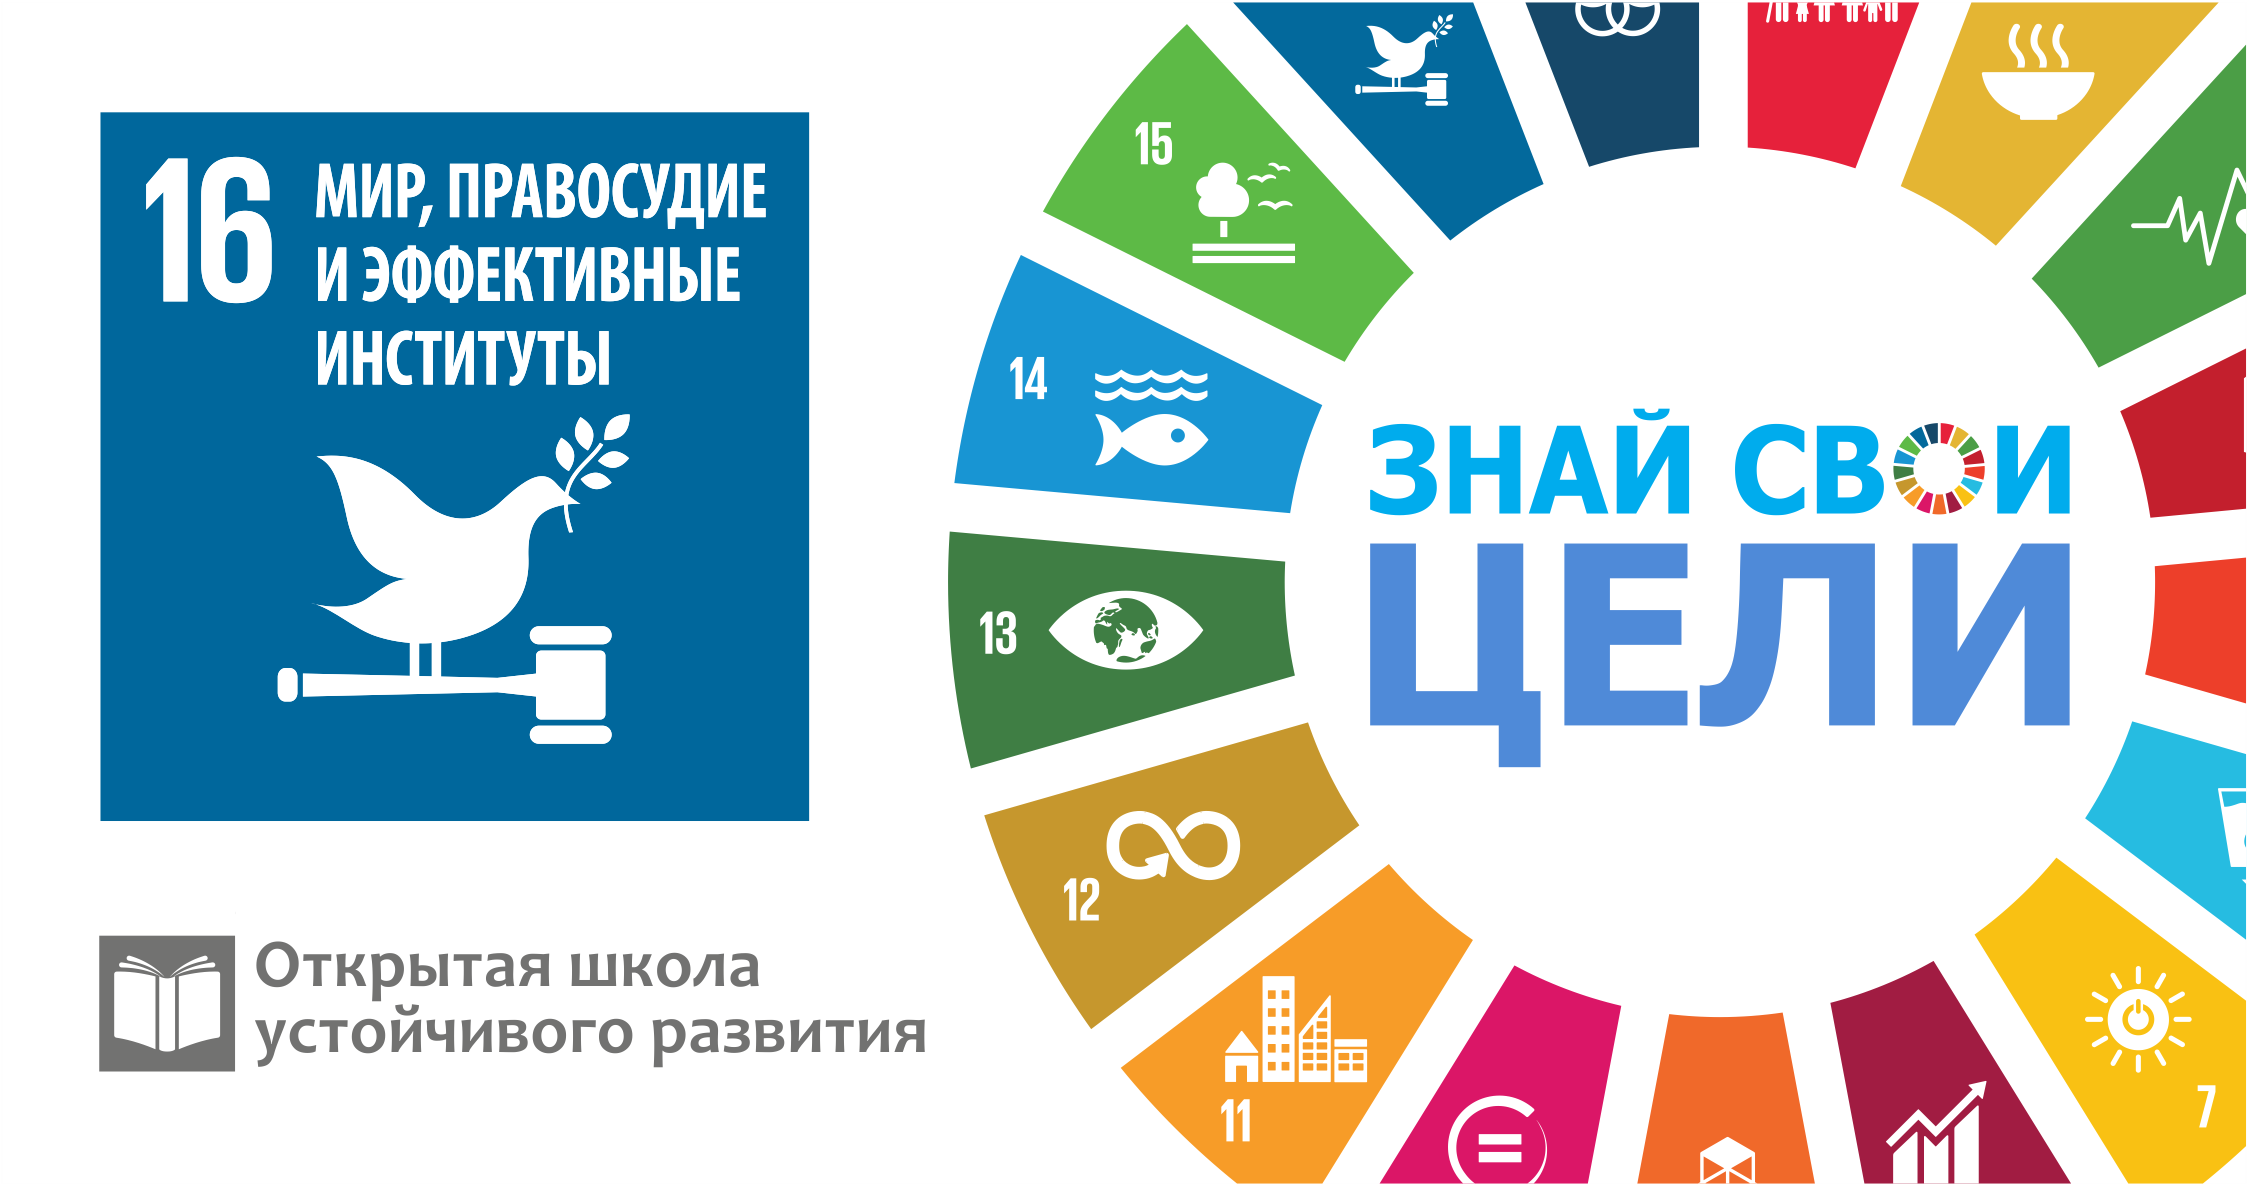 Цели оон в области развития. 17 Целей устойчивого развития ООН. Цели устойчивого развития. Цели устойчивого развития ООН. Цели в области устойчивого развития (ЦУР).